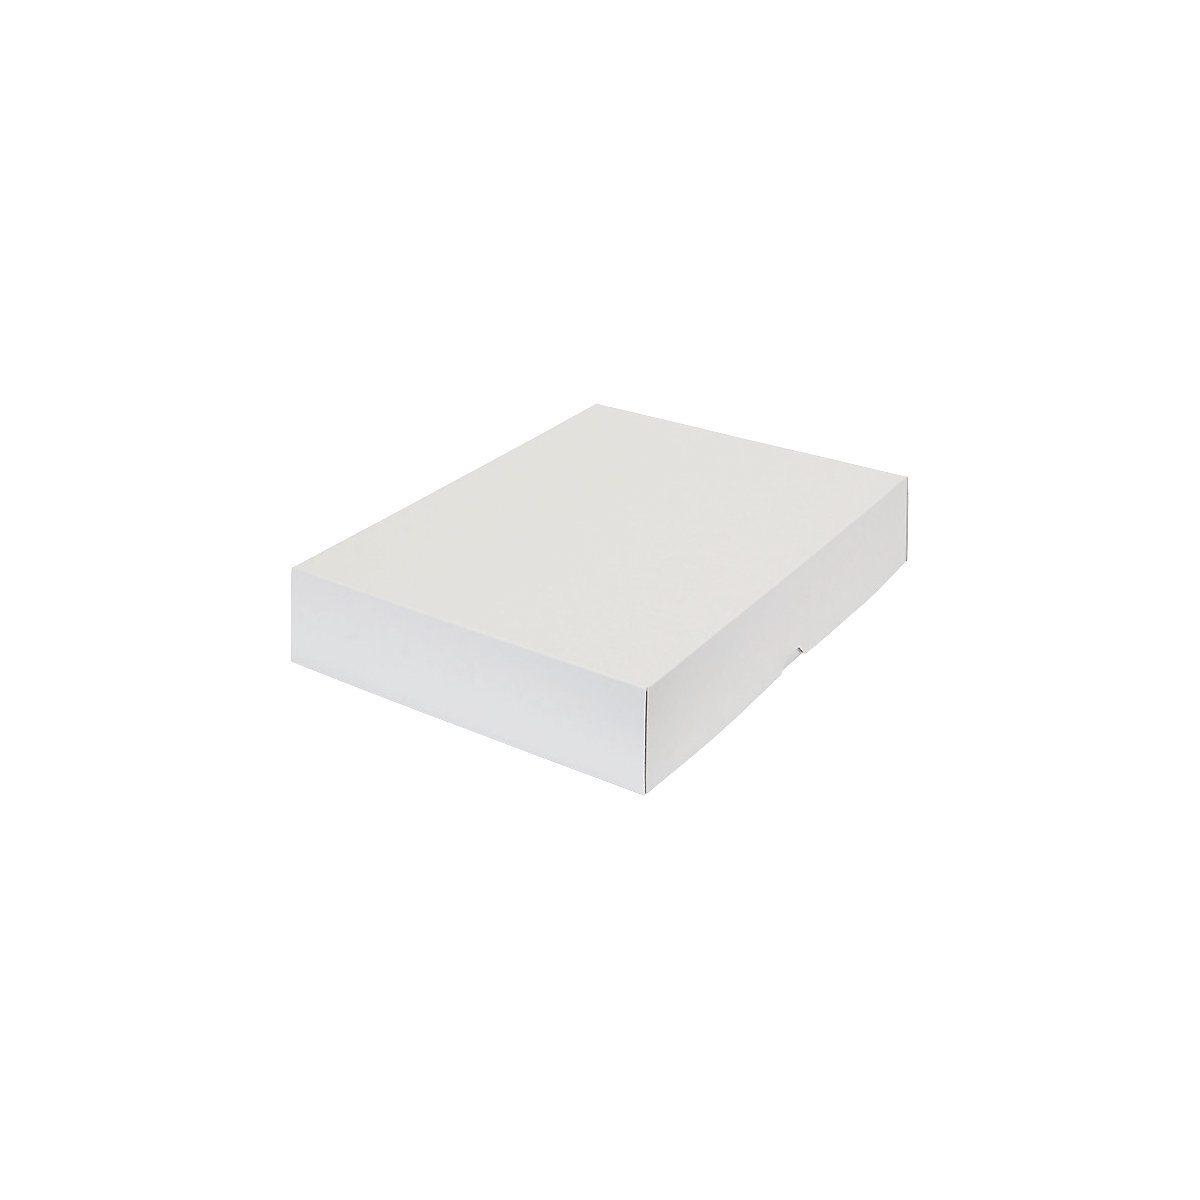 Stülpdeckelkarton, zweiteilig, Innenmaße 435 x 315 x 80 mm, A3, weiß, ab 120 Stk-9